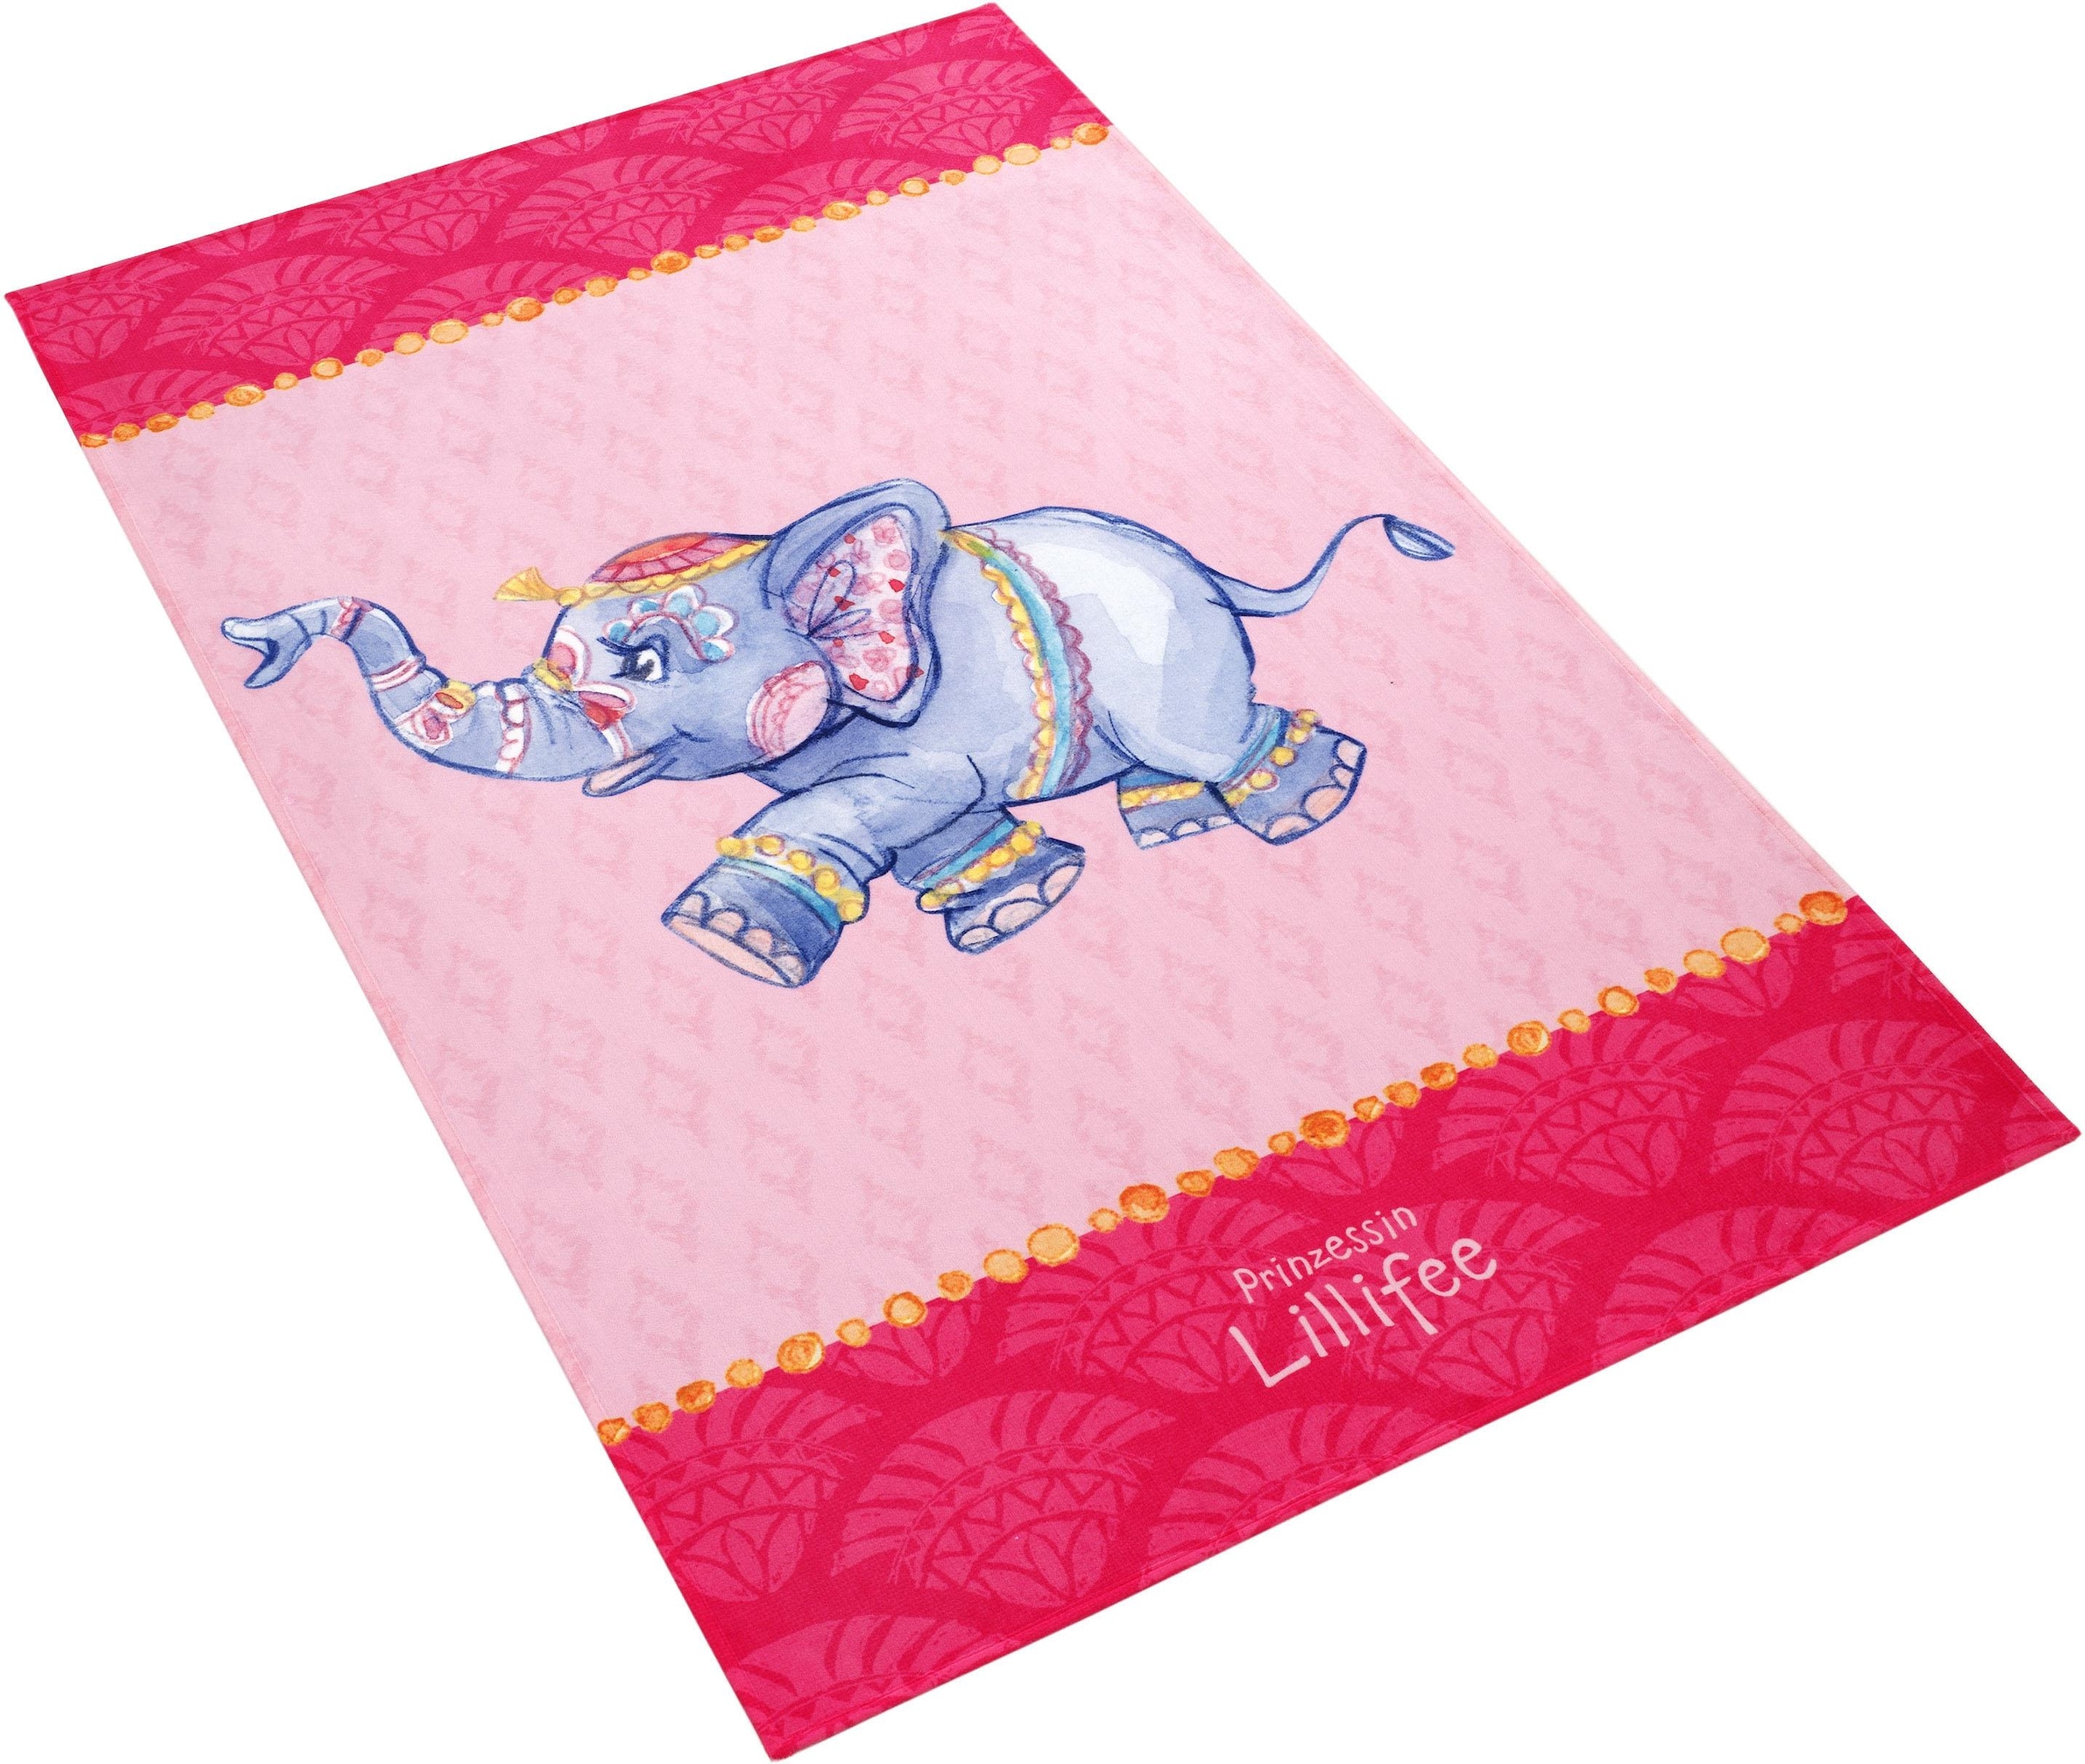 Prinzessin Lillifee Kinderteppich »LI-112«, rechteckig, bedruckter Stoff, Motiv Elefant, weiche Microfaser, Kinderzimmer